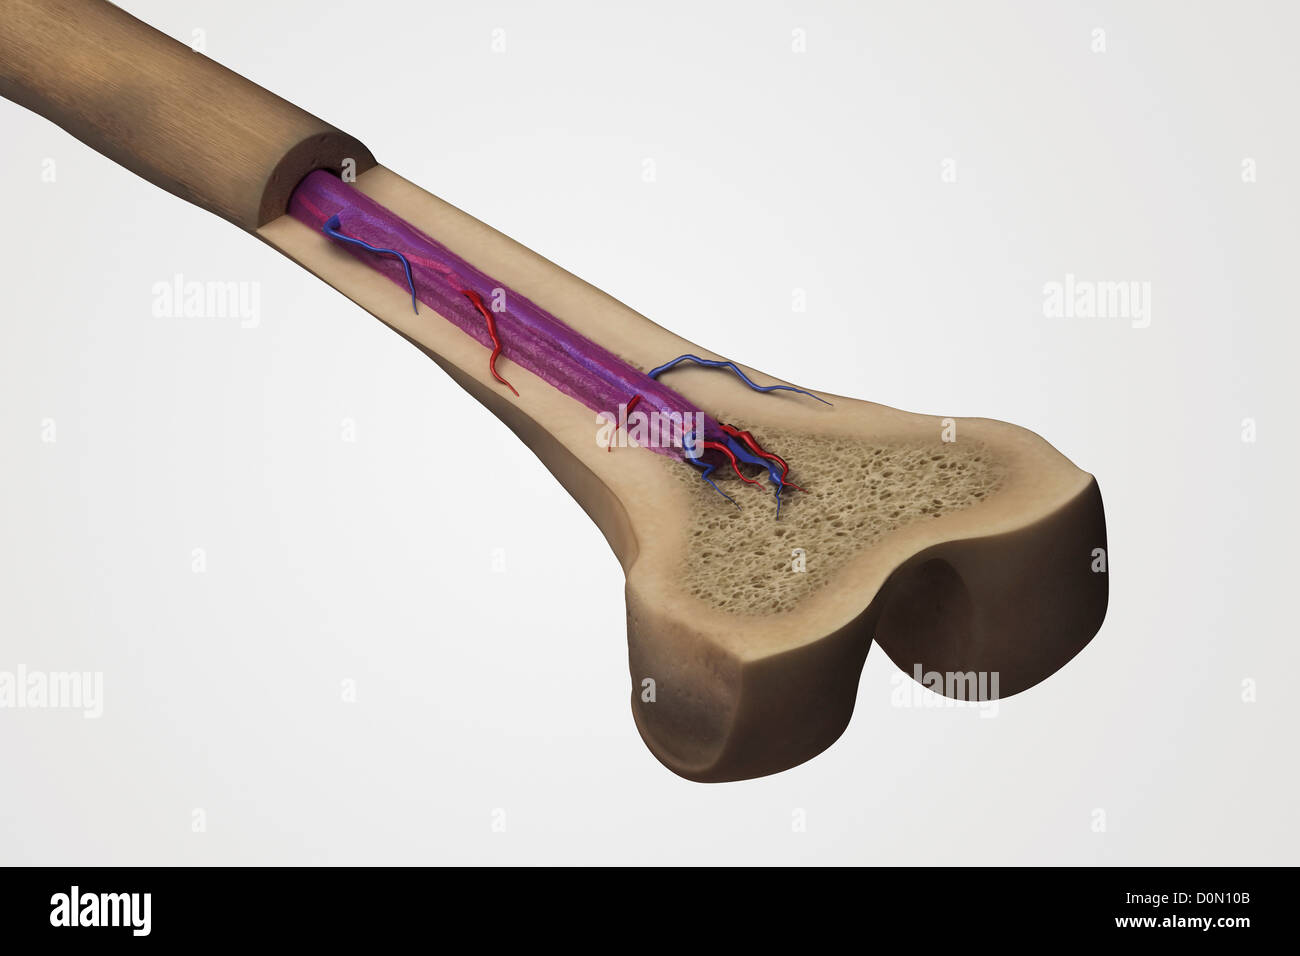 Sezione trasversale di un osso femore che mostra la struttura anatomica inclusi osso spongioso e midollo spinale. Foto Stock